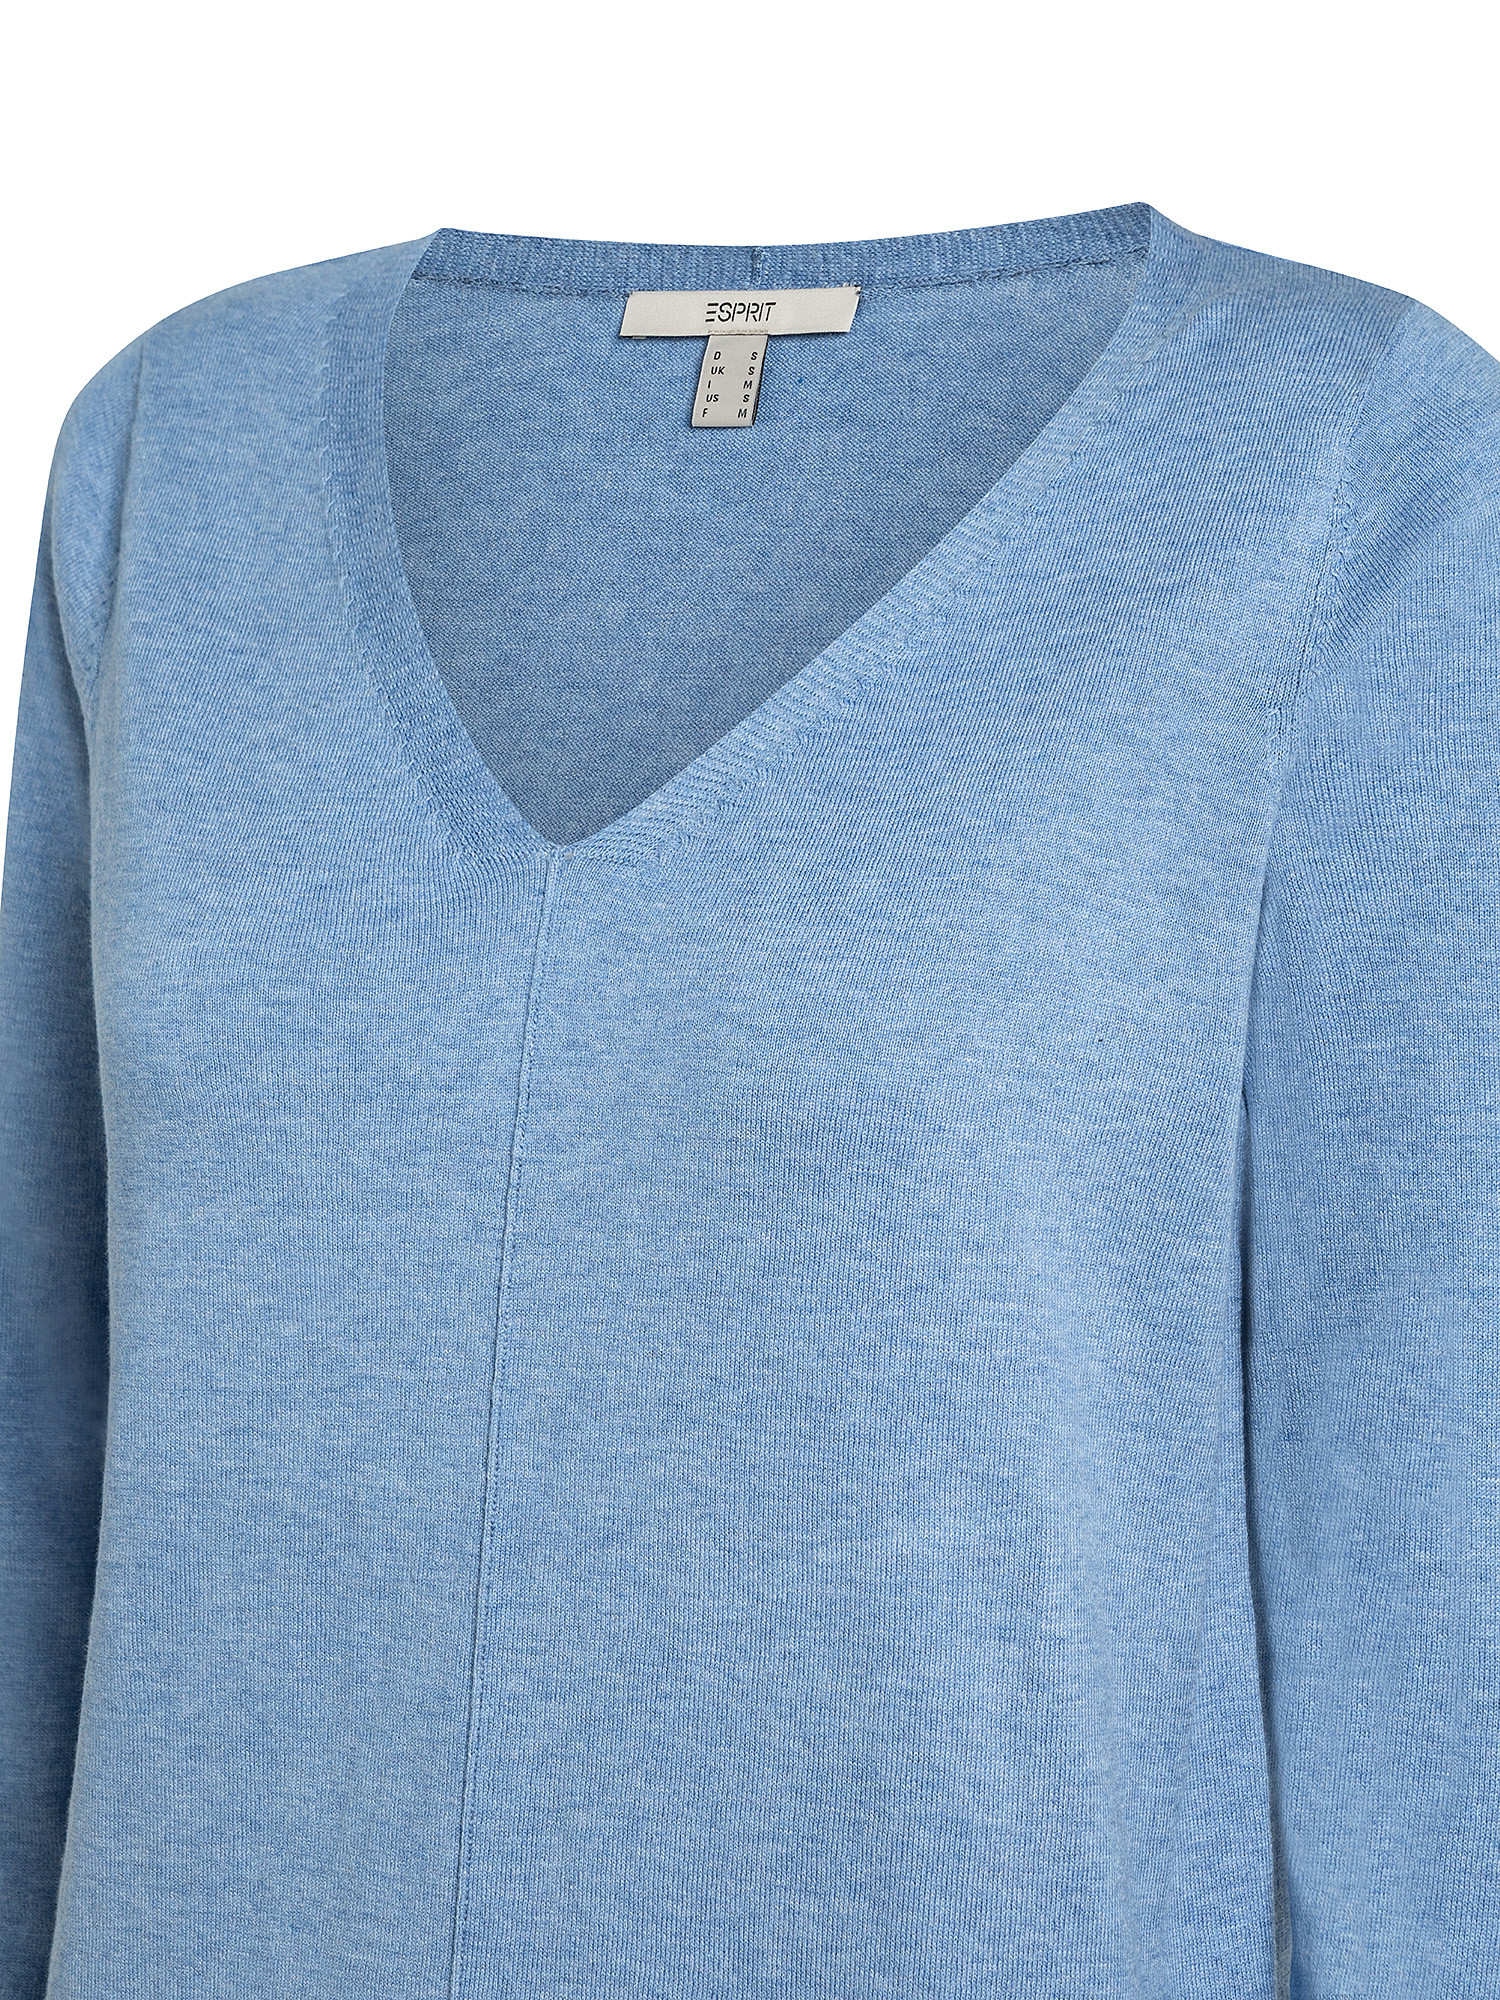 V-neck cardigan, Light Blue, large image number 2